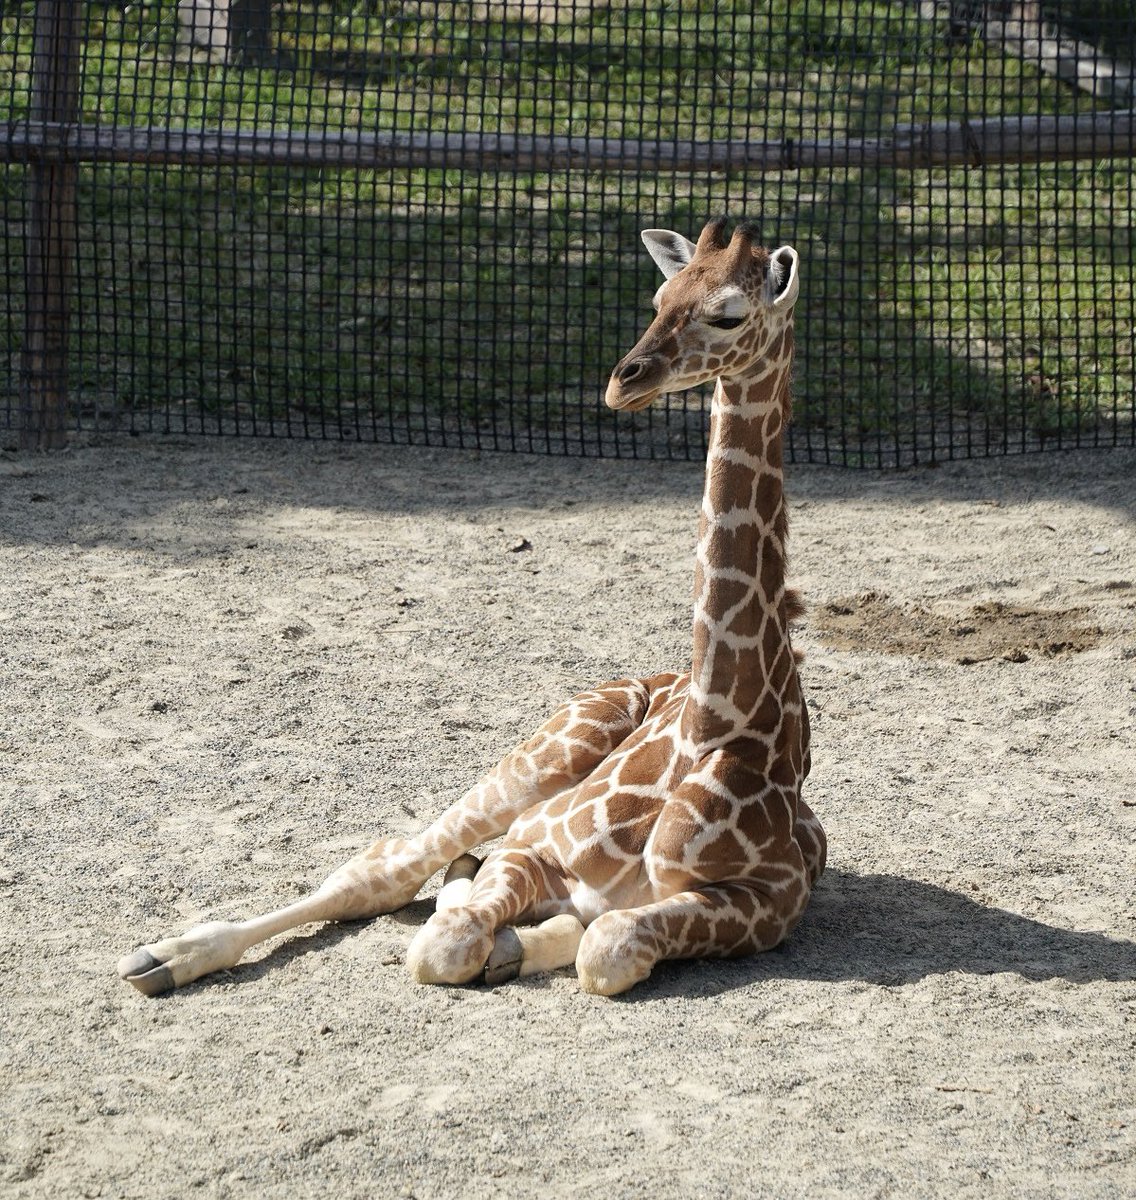 優雅にお寛ぎ中な
ミライさんとメイちゃんの
おチビちゃん🦒
2022/10/15📷
#京都市動物園
#アミメキリン
#kyotocityzoo
#ReticulatedGiraffe 
#SomaliGiraffe 
#Mirai  #May  #baby